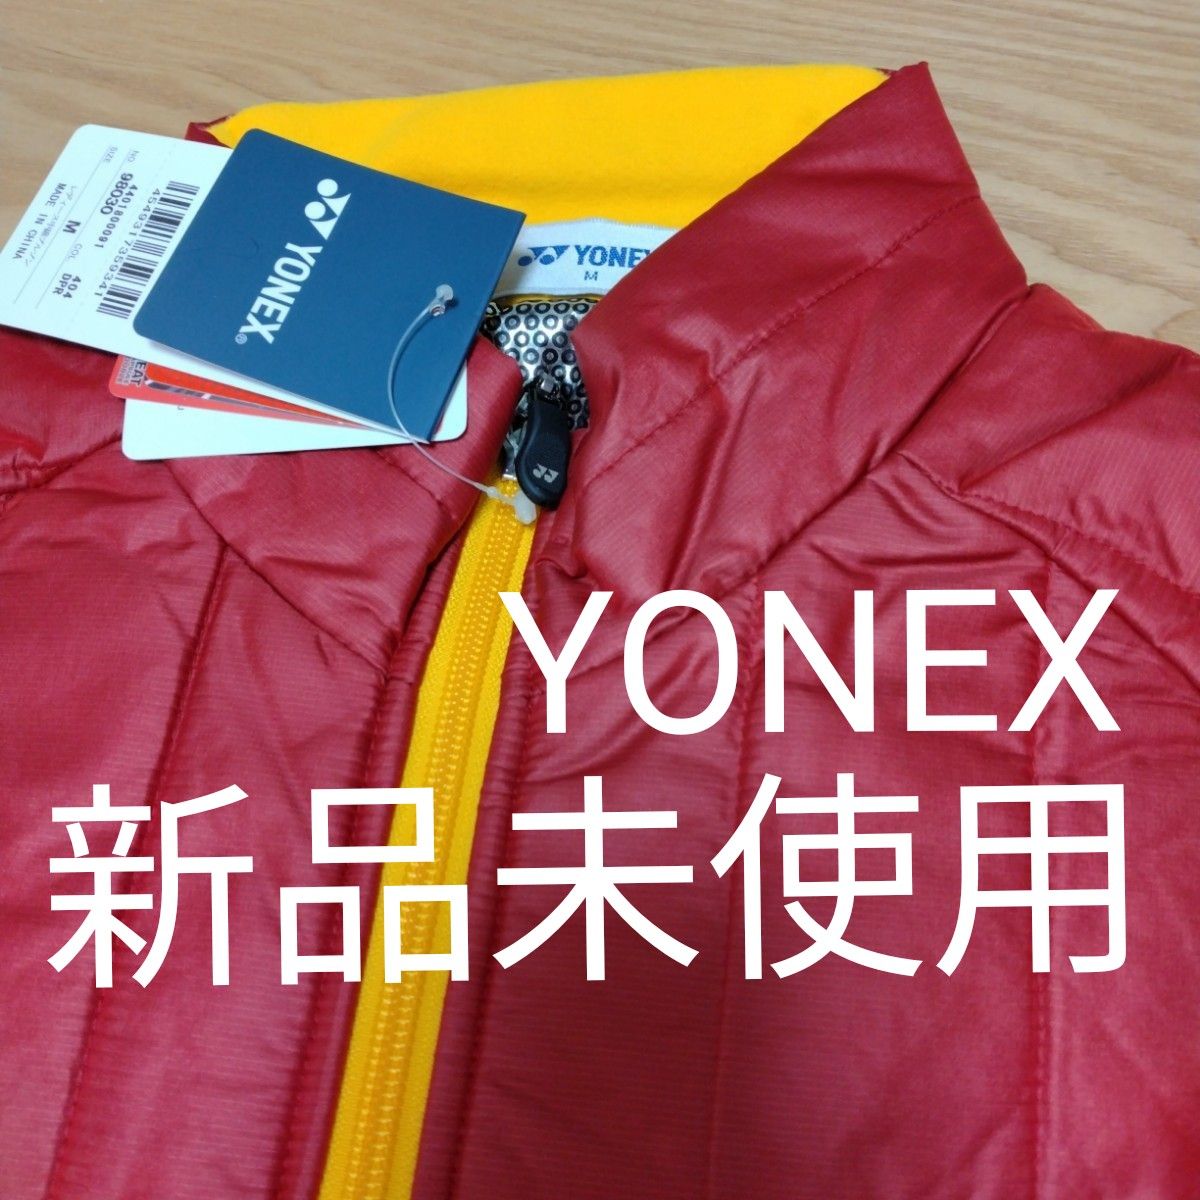 YONEX ダブル ヒートカプセル ウエア レッド